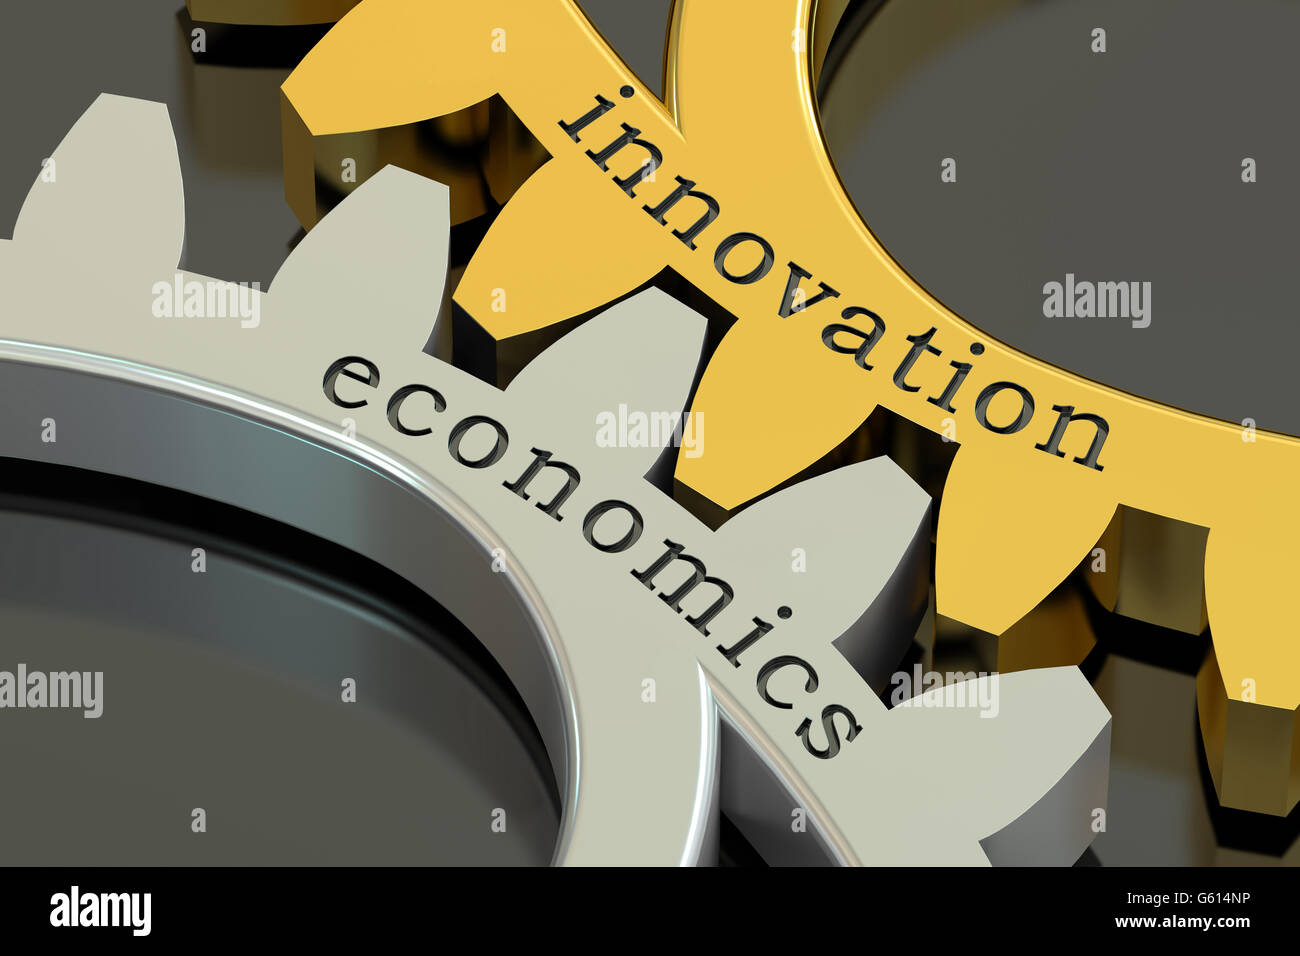 Concept de l'économie de l'innovation sur les roues dentées, 3D Rendering Banque D'Images